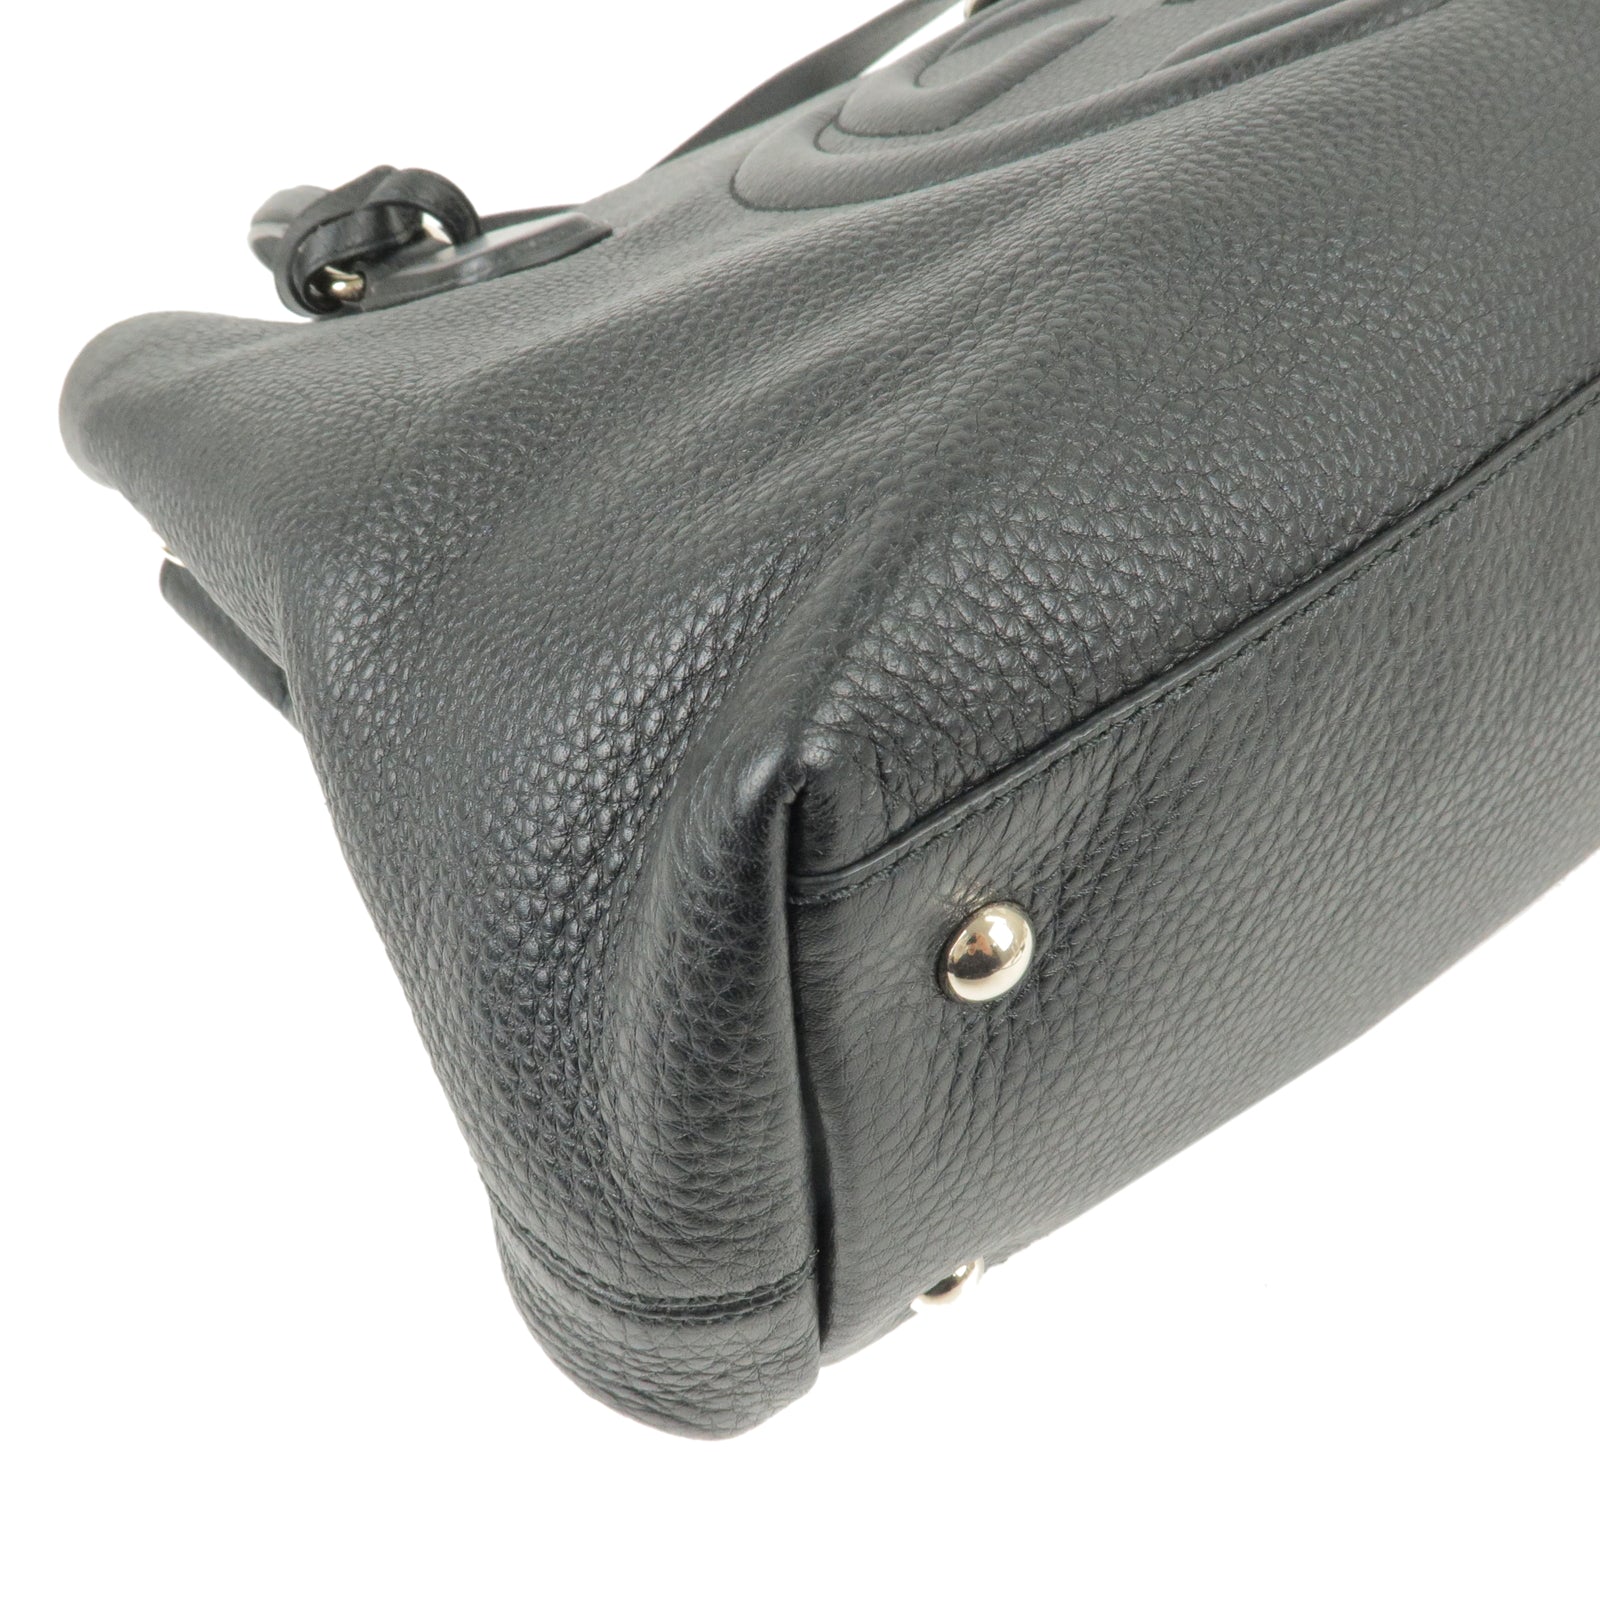 GUCCI-SOHO-Leather-2-Way-Shoulder-Bag-Tote-Bag-Black-308363 – dct